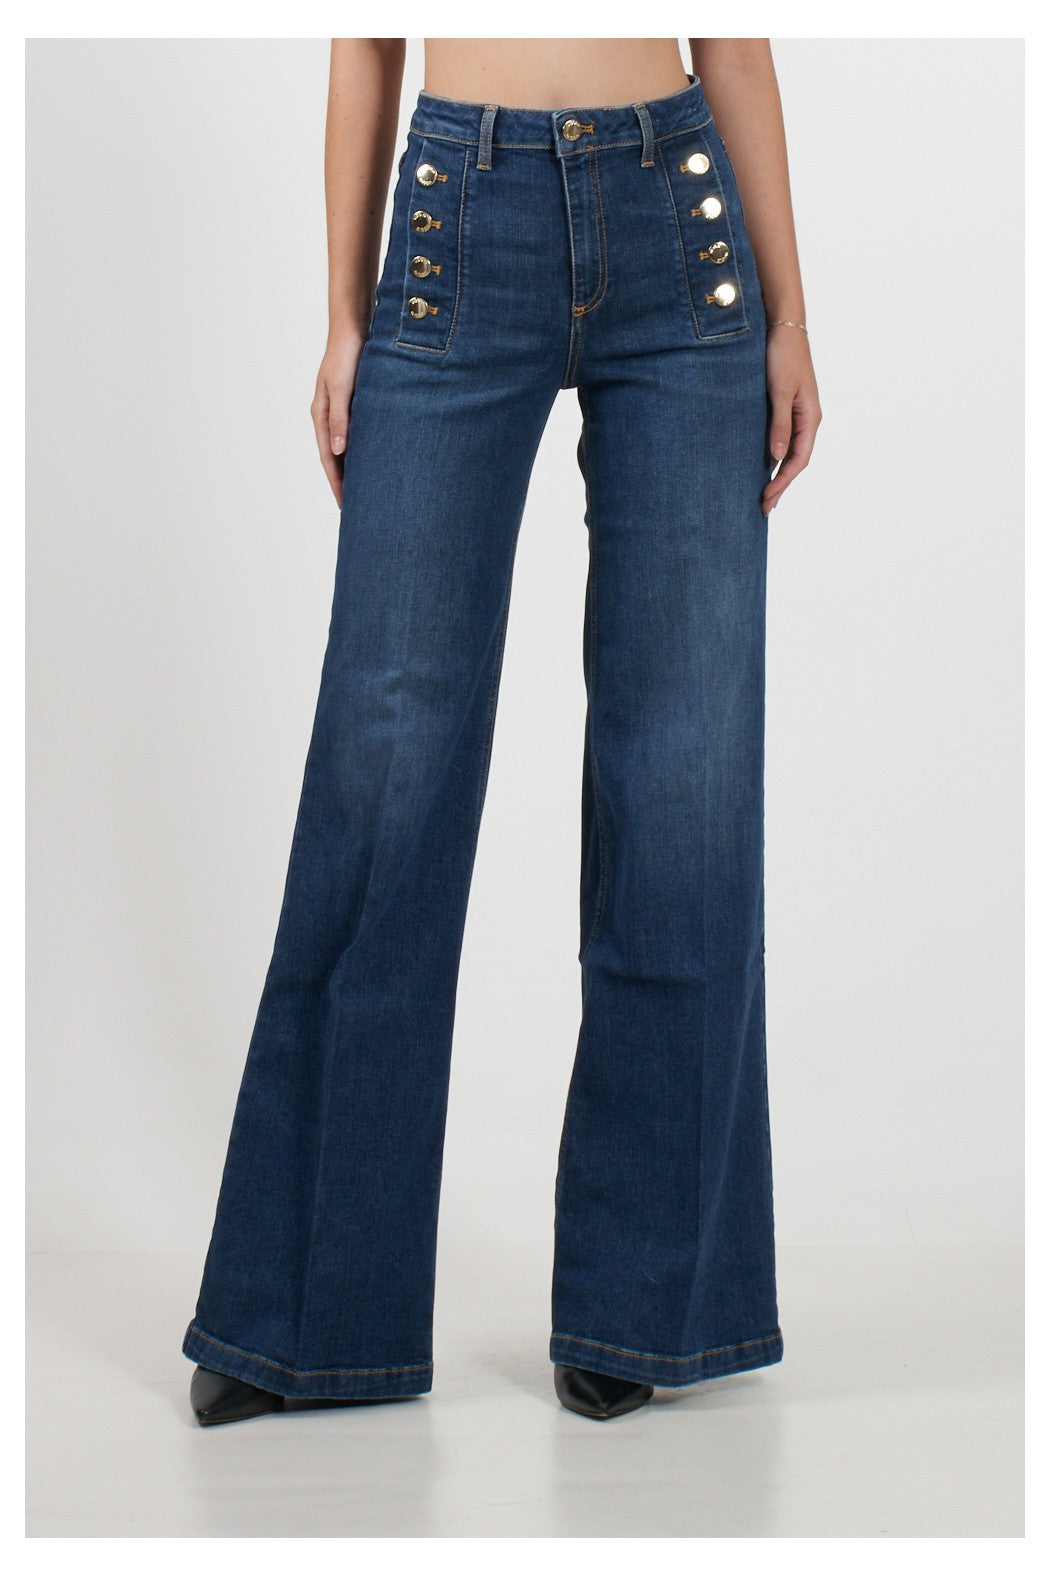 DR5018-DENIM - jeans - VICOLO